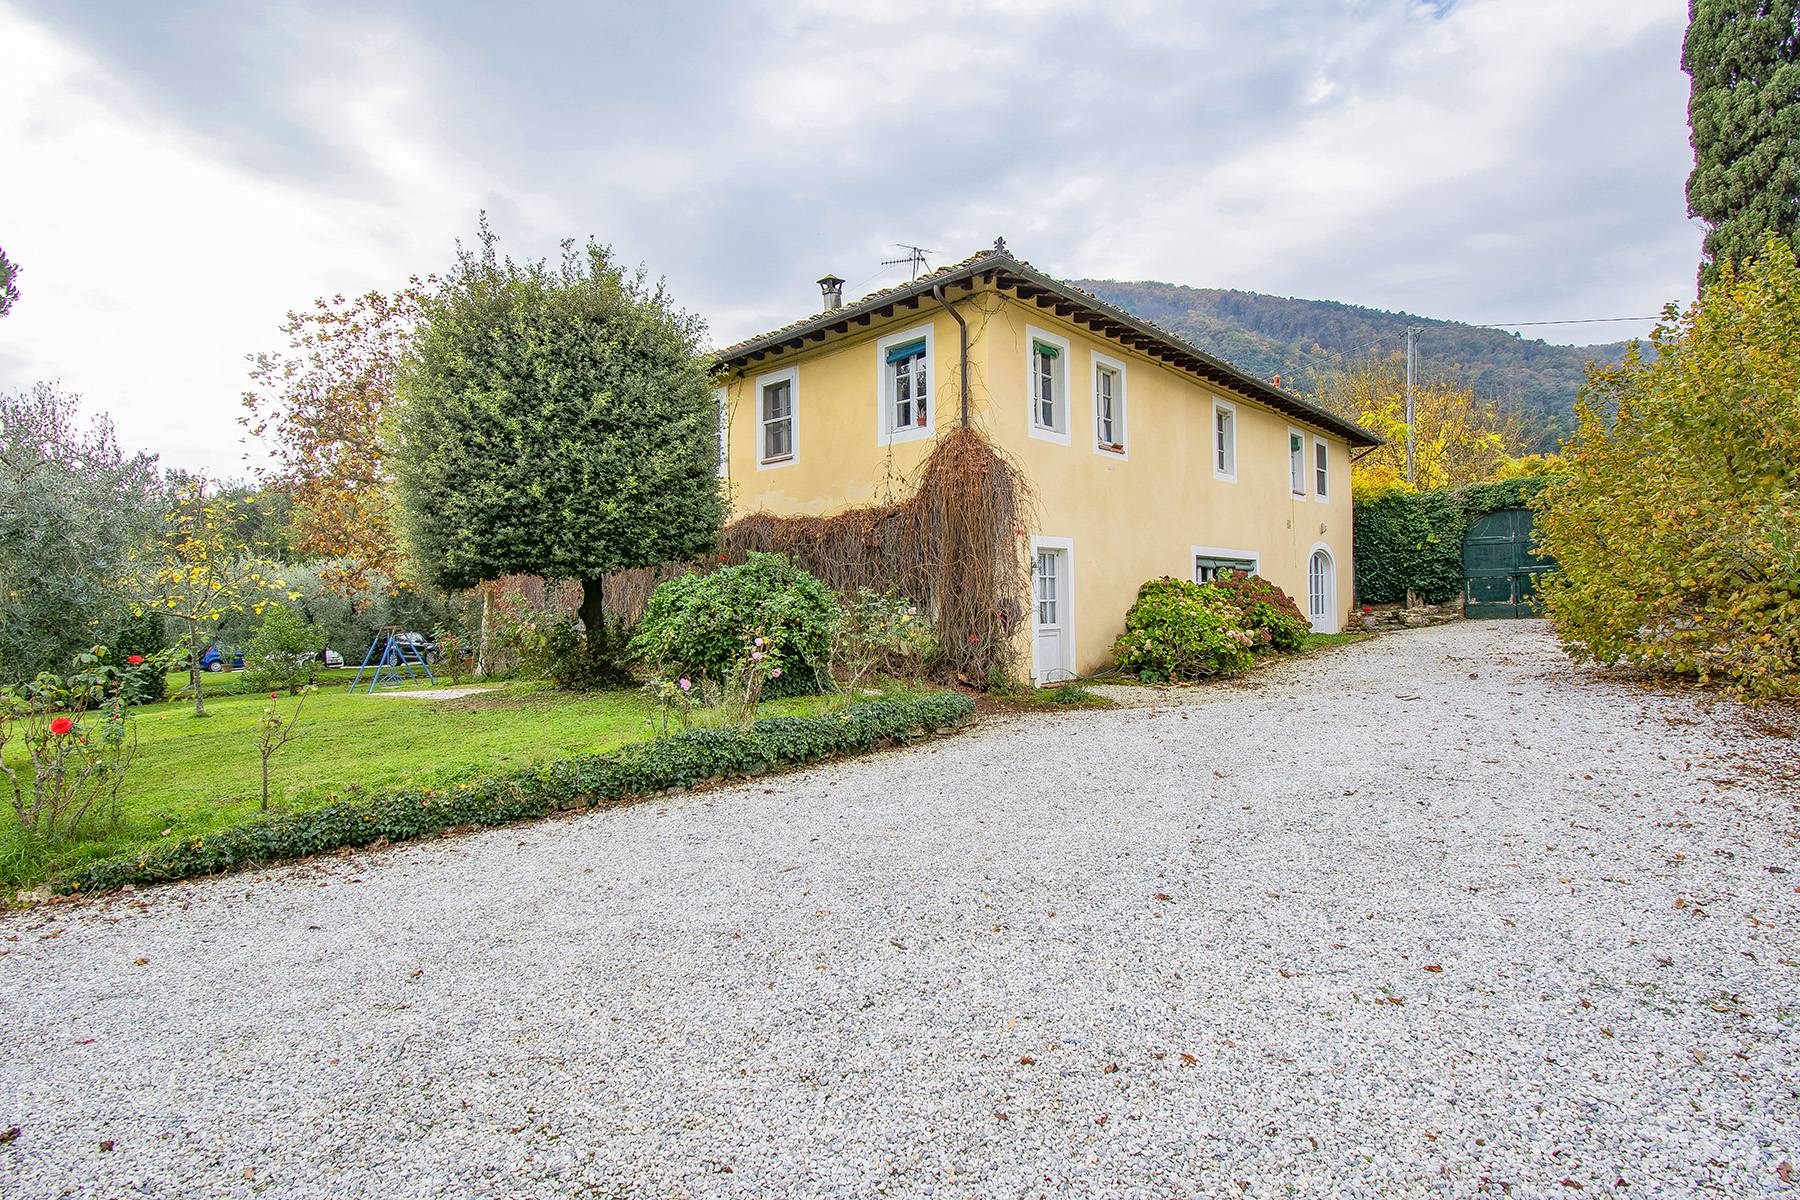 Casa indipendente in Vendita a Lucca: 5 locali, 500 mq - Foto 27